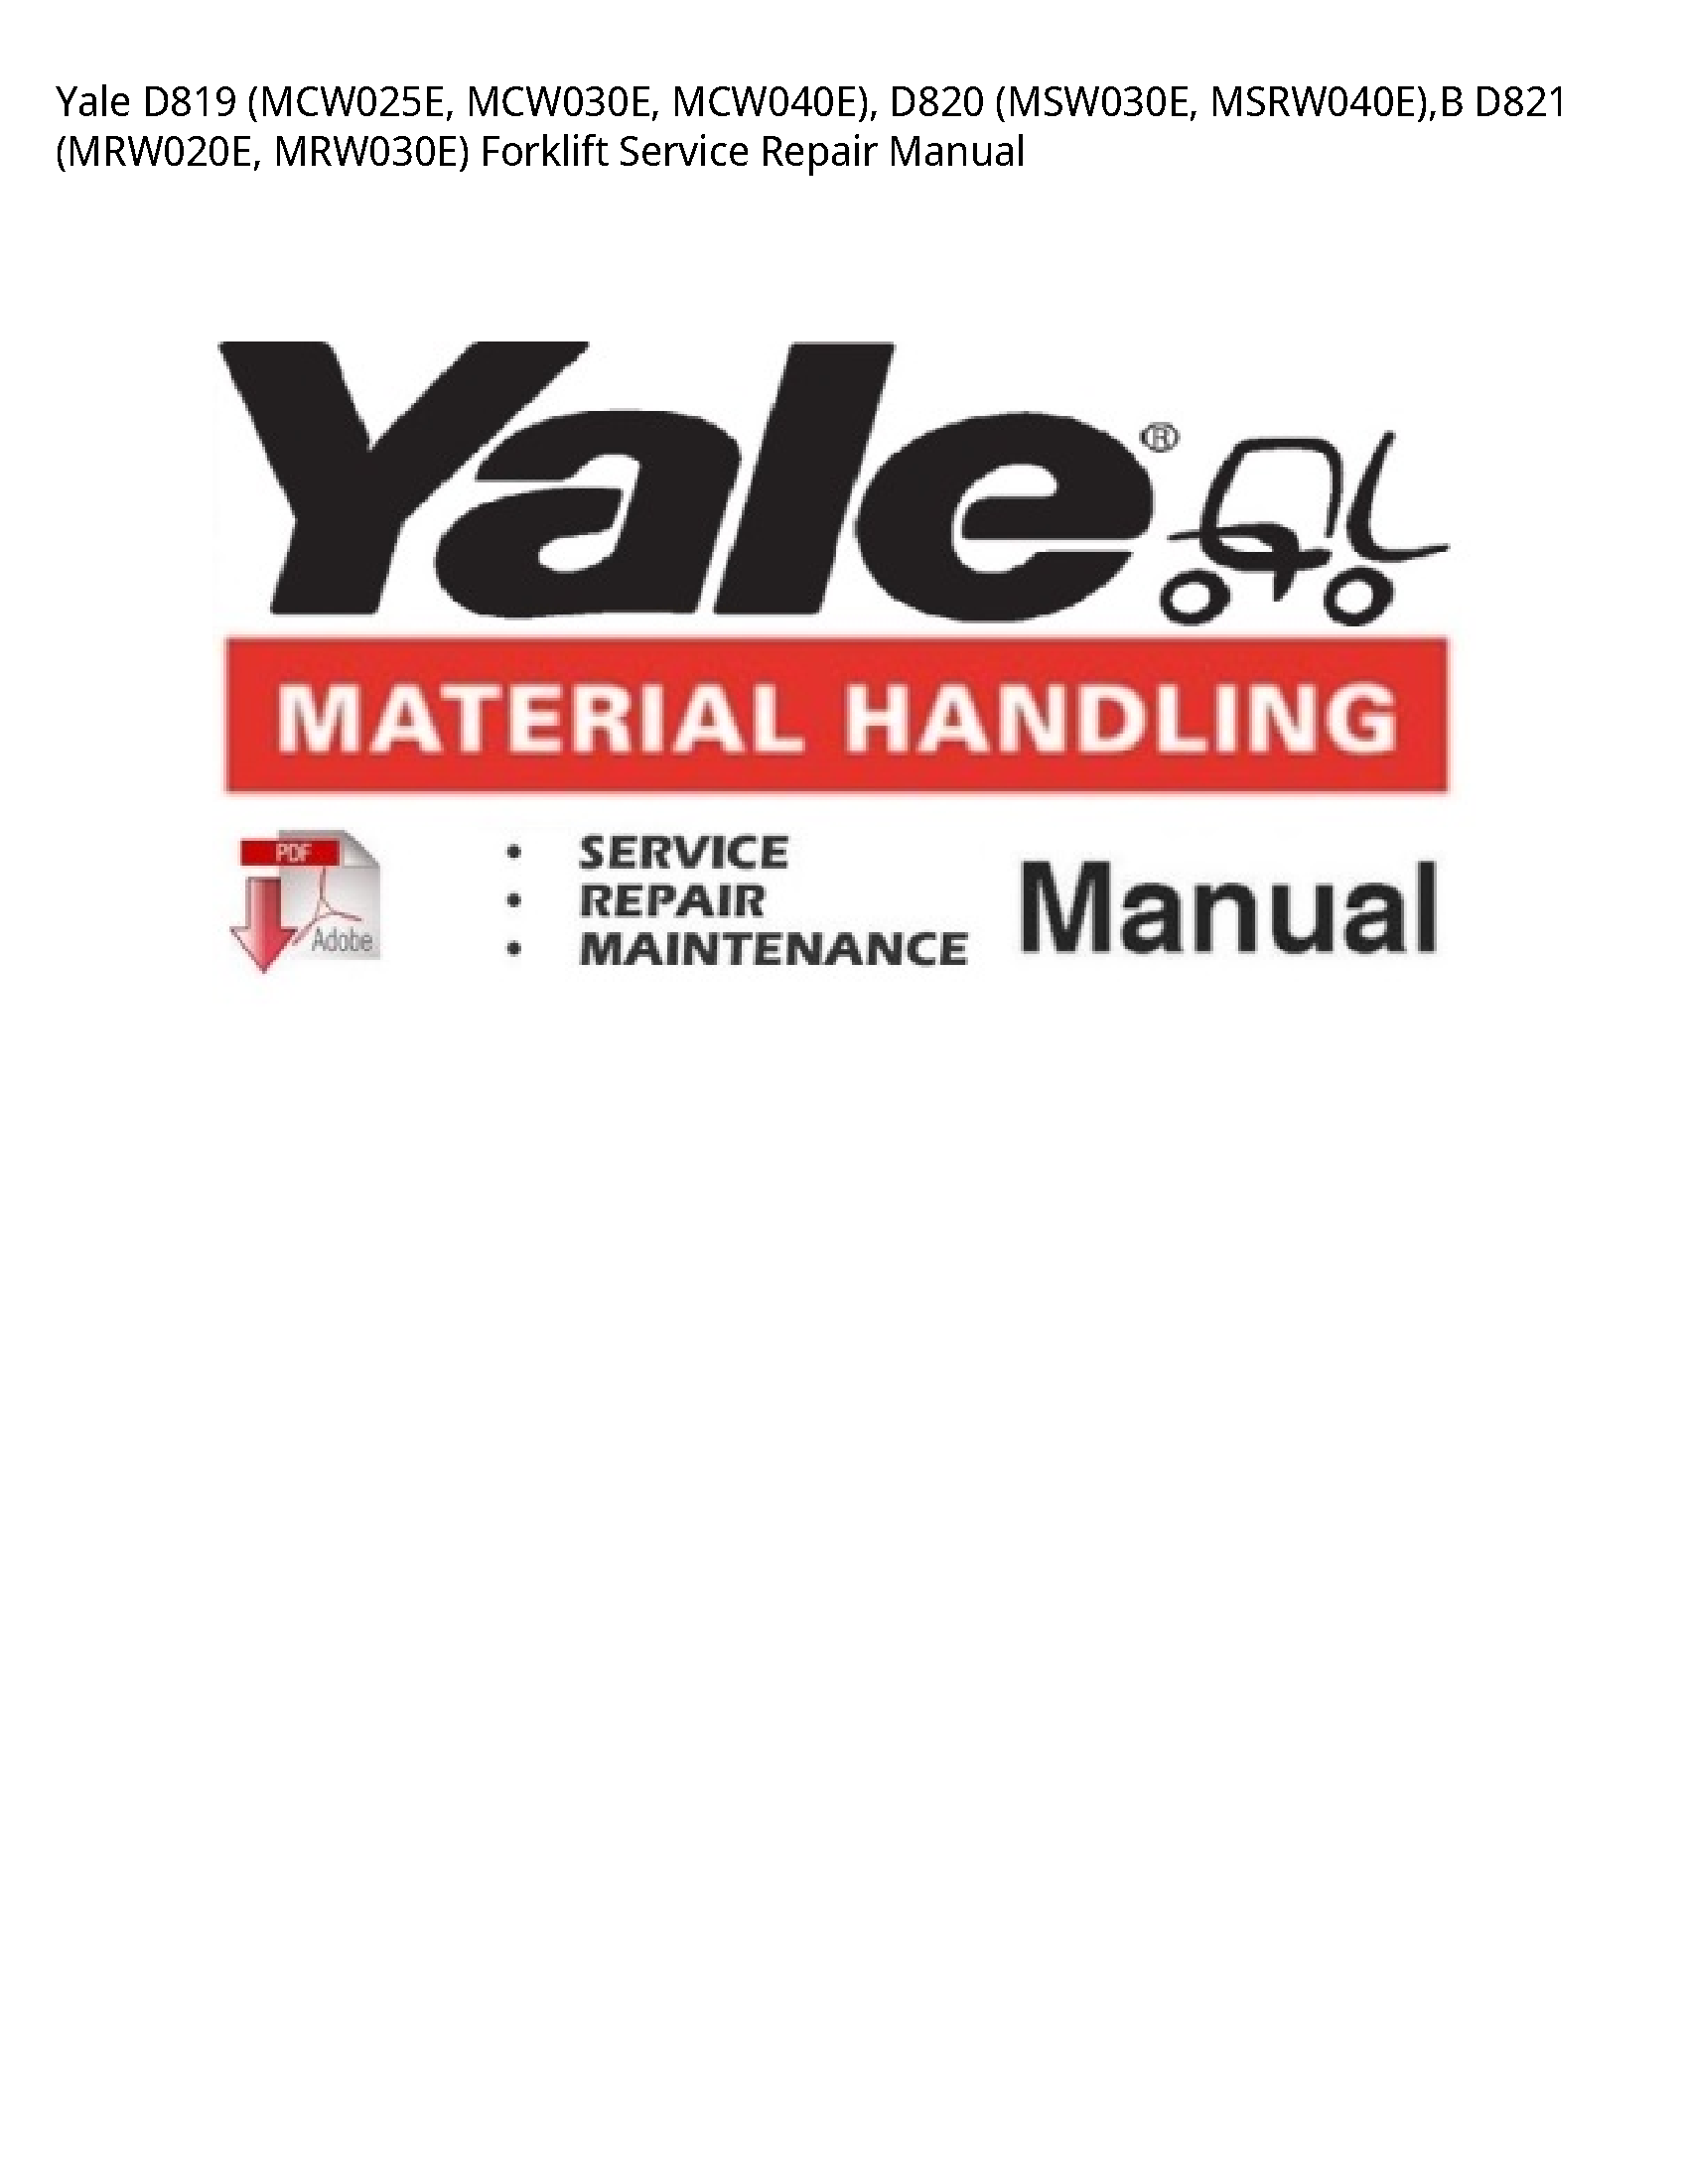 Yale D819 Forklift manual